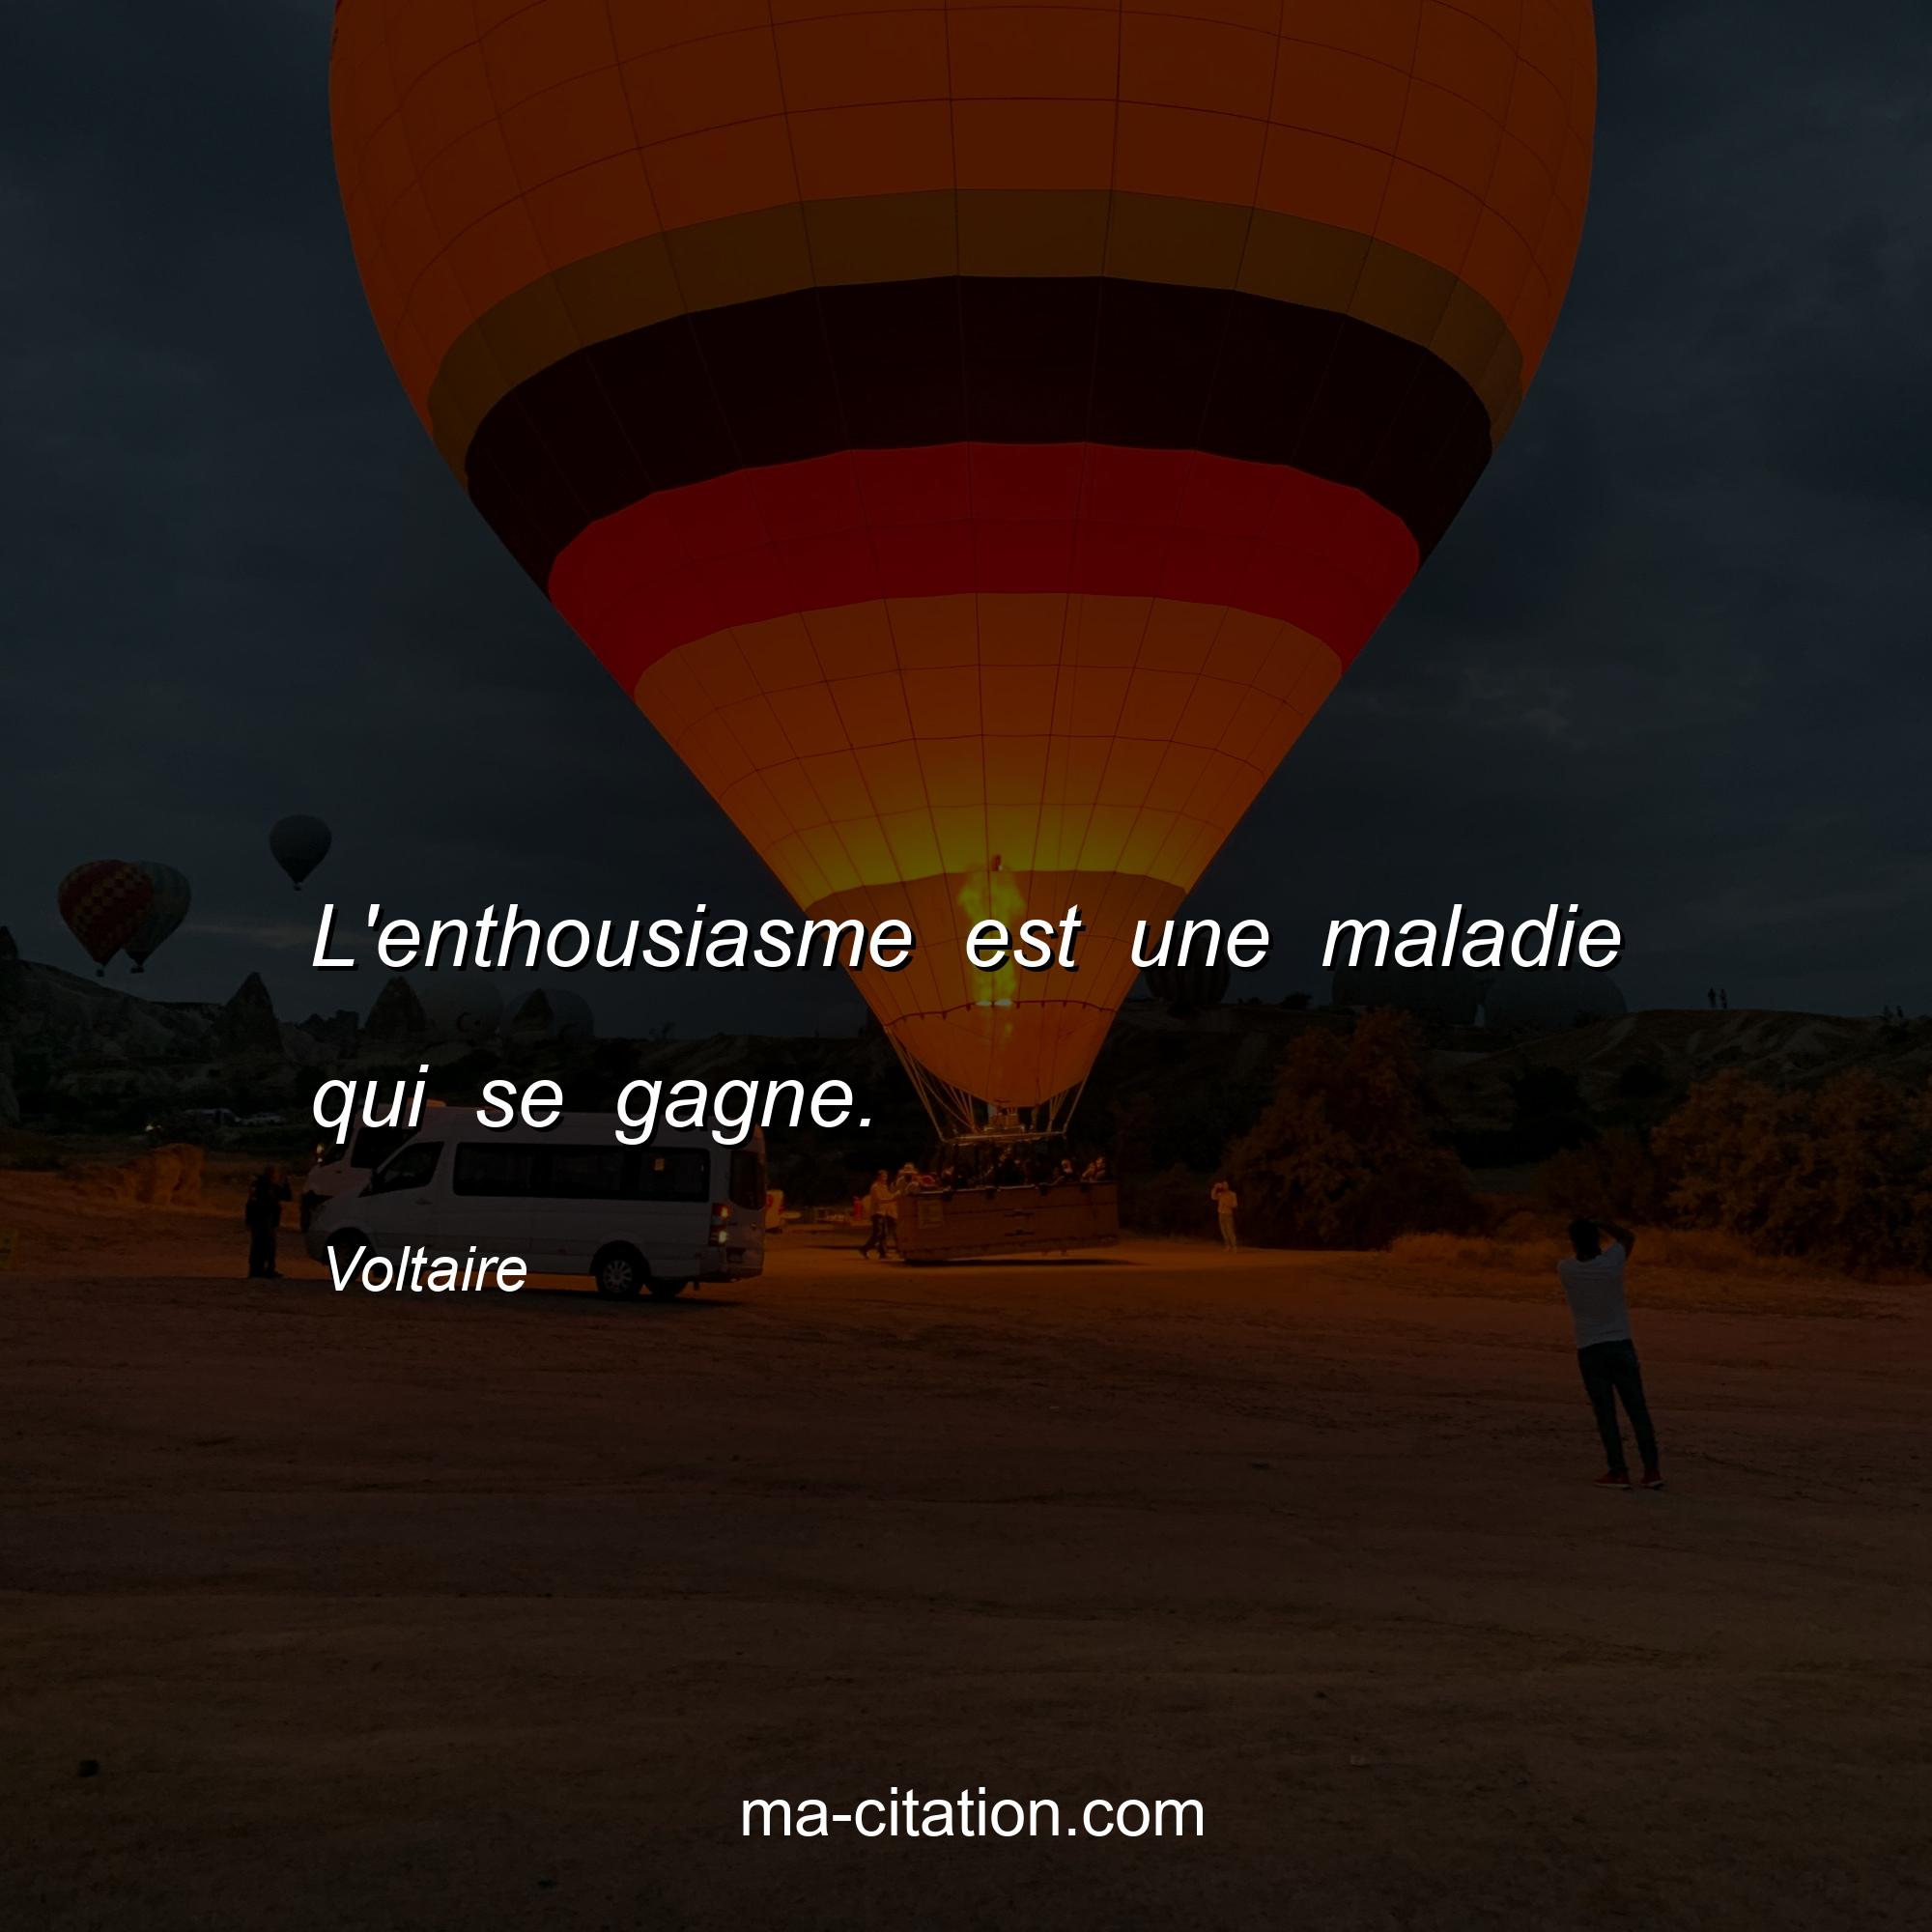 Voltaire : L'enthousiasme est une maladie qui se gagne.